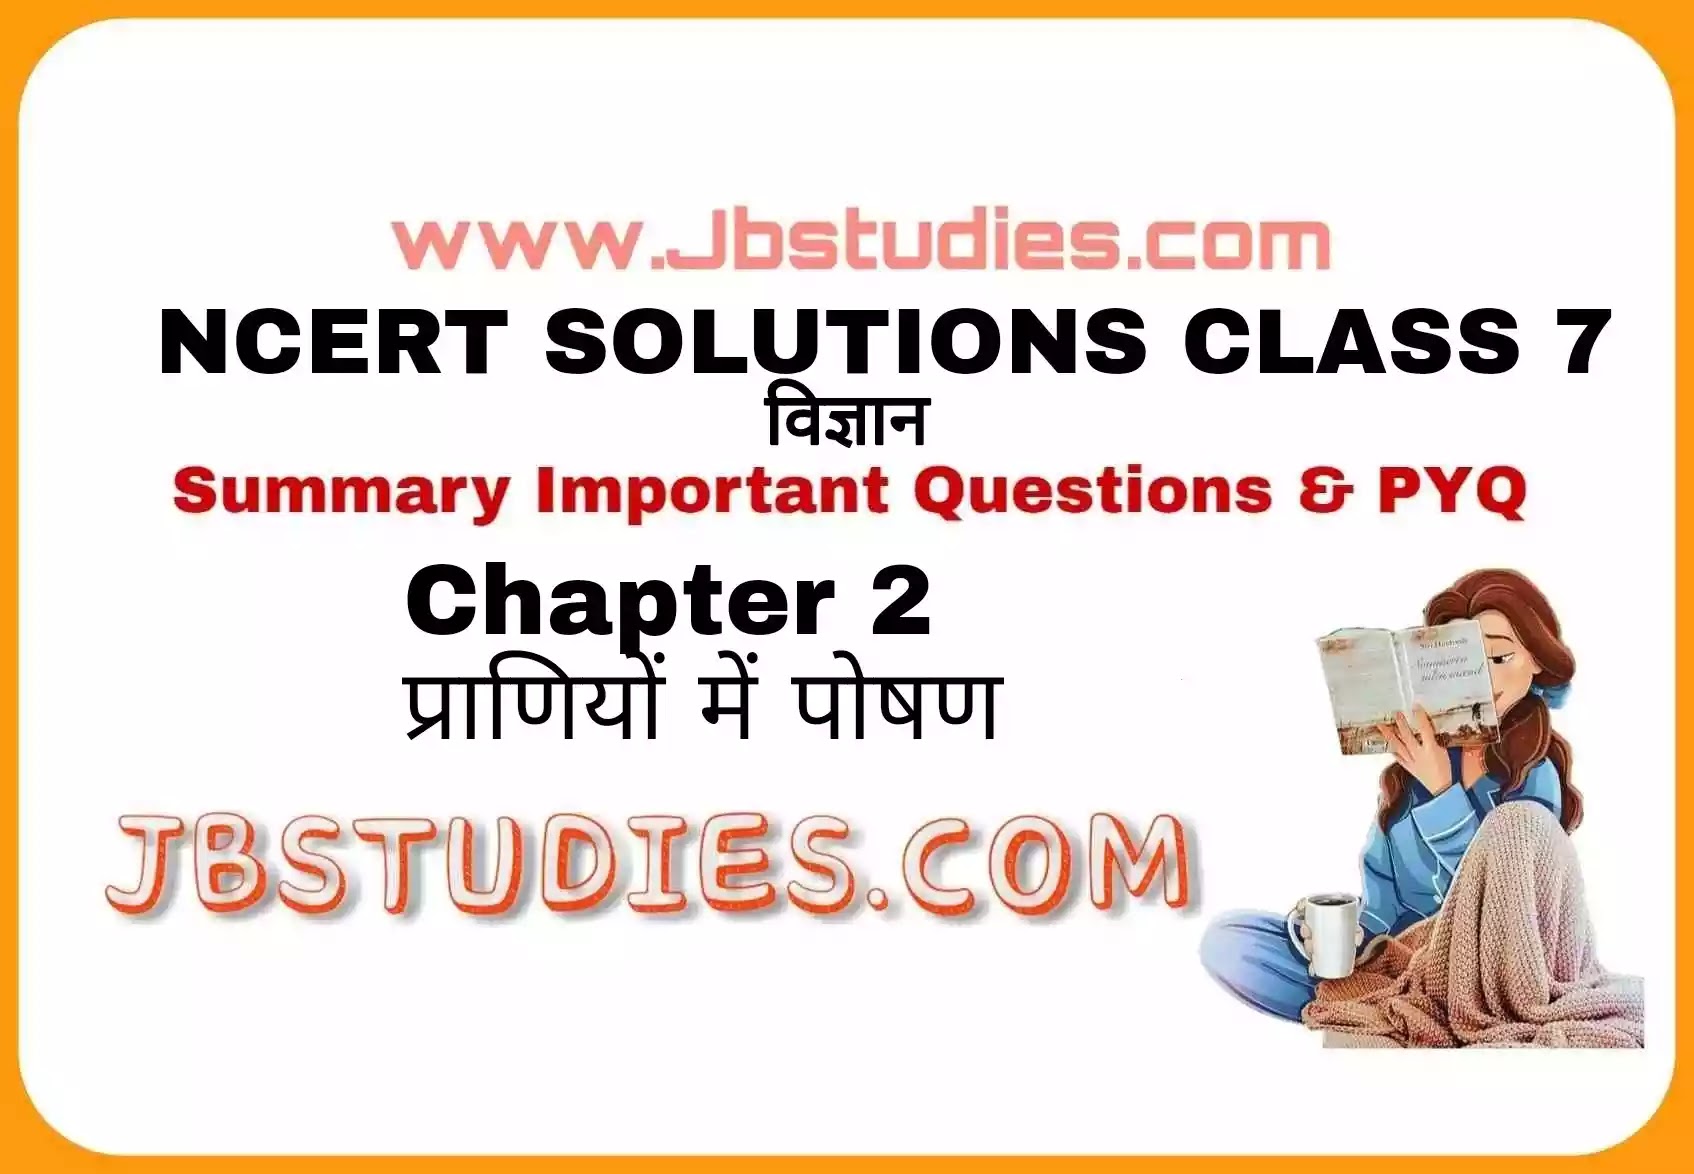 Solutions Class 7 विज्ञान Chapter-2 (प्राणियों में पोषण)